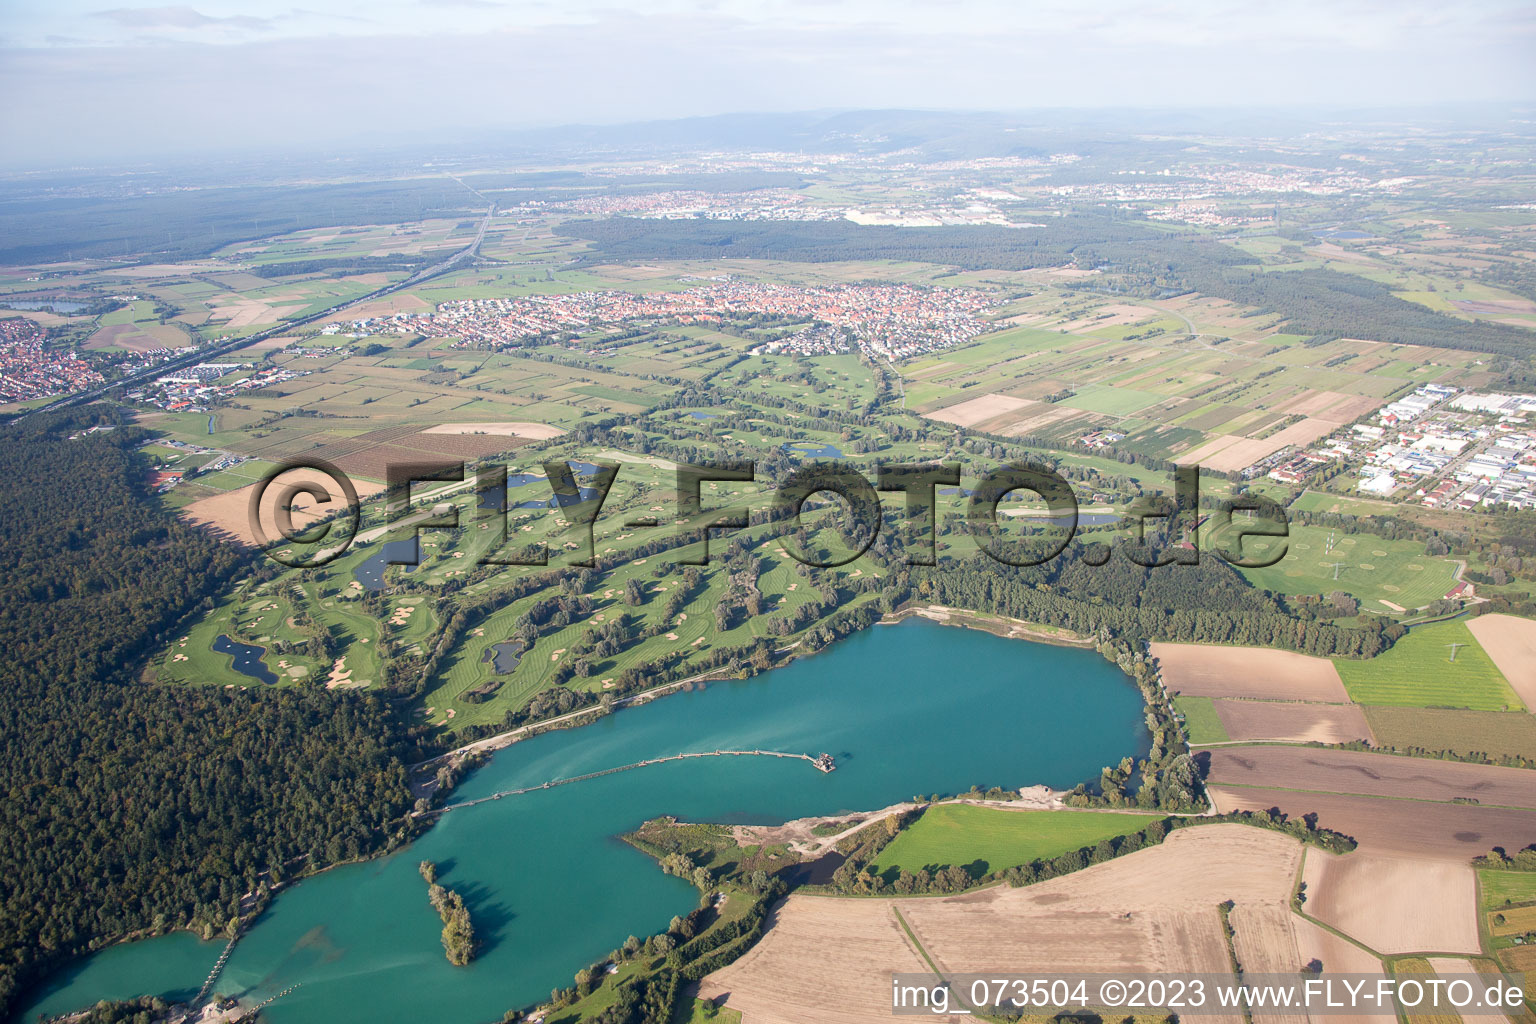 Vue aérienne de Club de golf à Lußhardtsee à le quartier Rot in St. Leon-Rot dans le département Bade-Wurtemberg, Allemagne